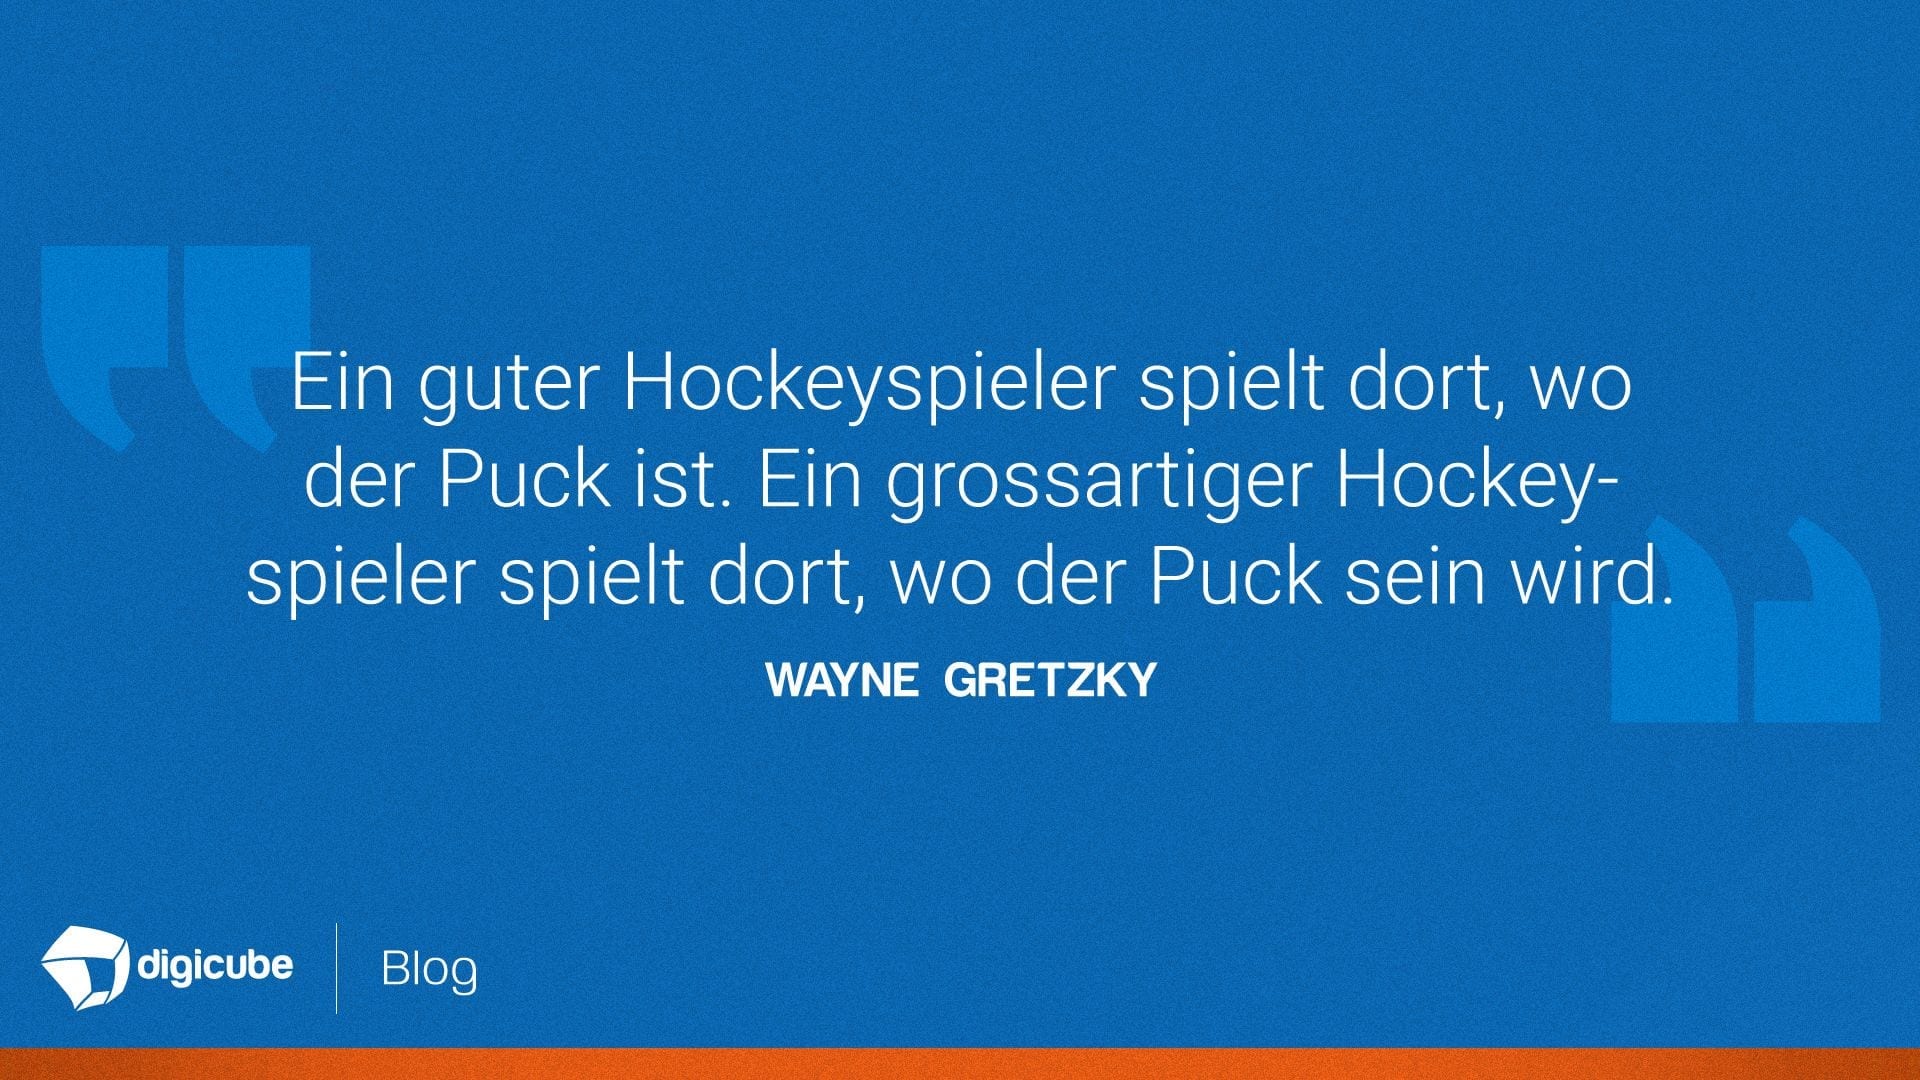 Wayne Gretzkys Zitat